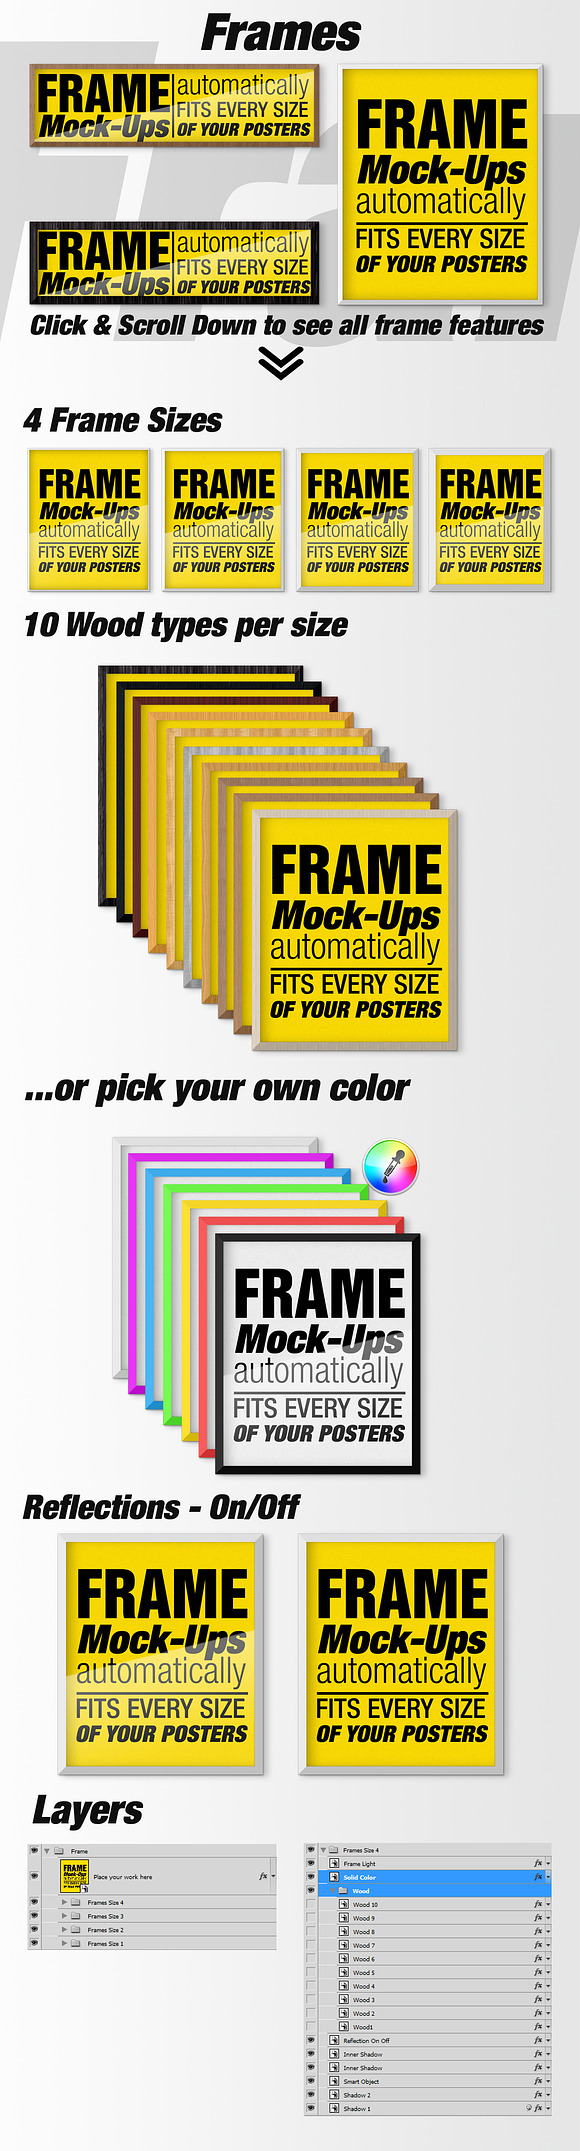 Canvas Mockups - Frames Mockups v 38 in Print Mockups - product preview 6